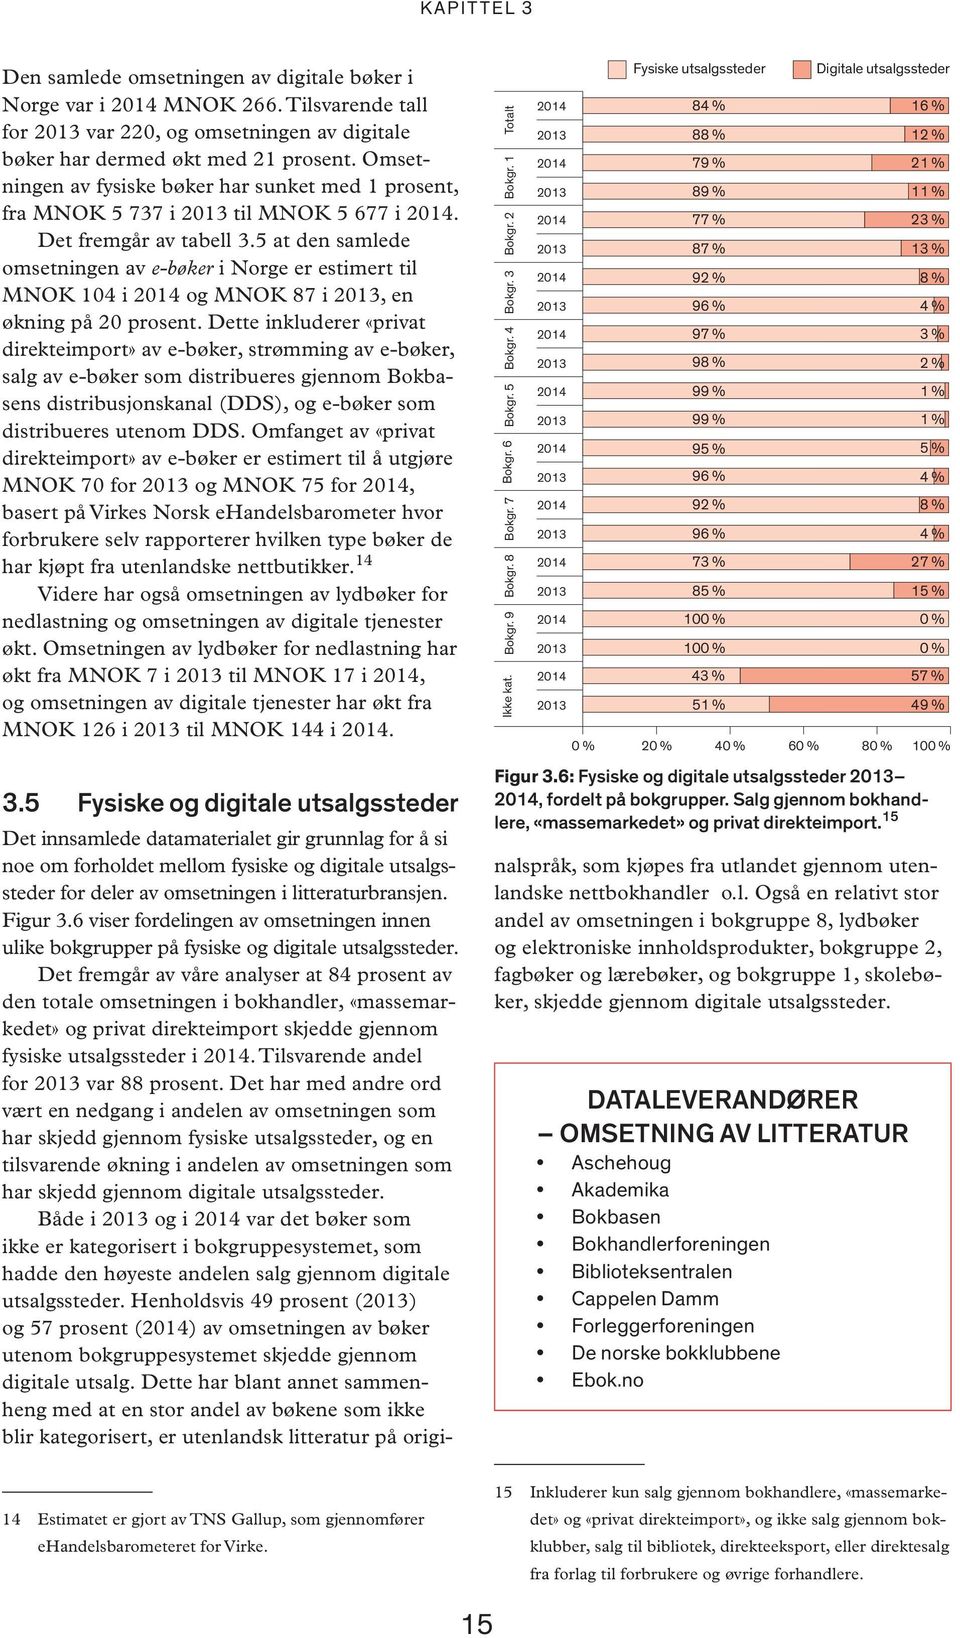 5 at den samlede omsetningen av e-bøker i Norge er estimert til MNOK 104 i og MNOK 87 i, en økning på 20 prosent.